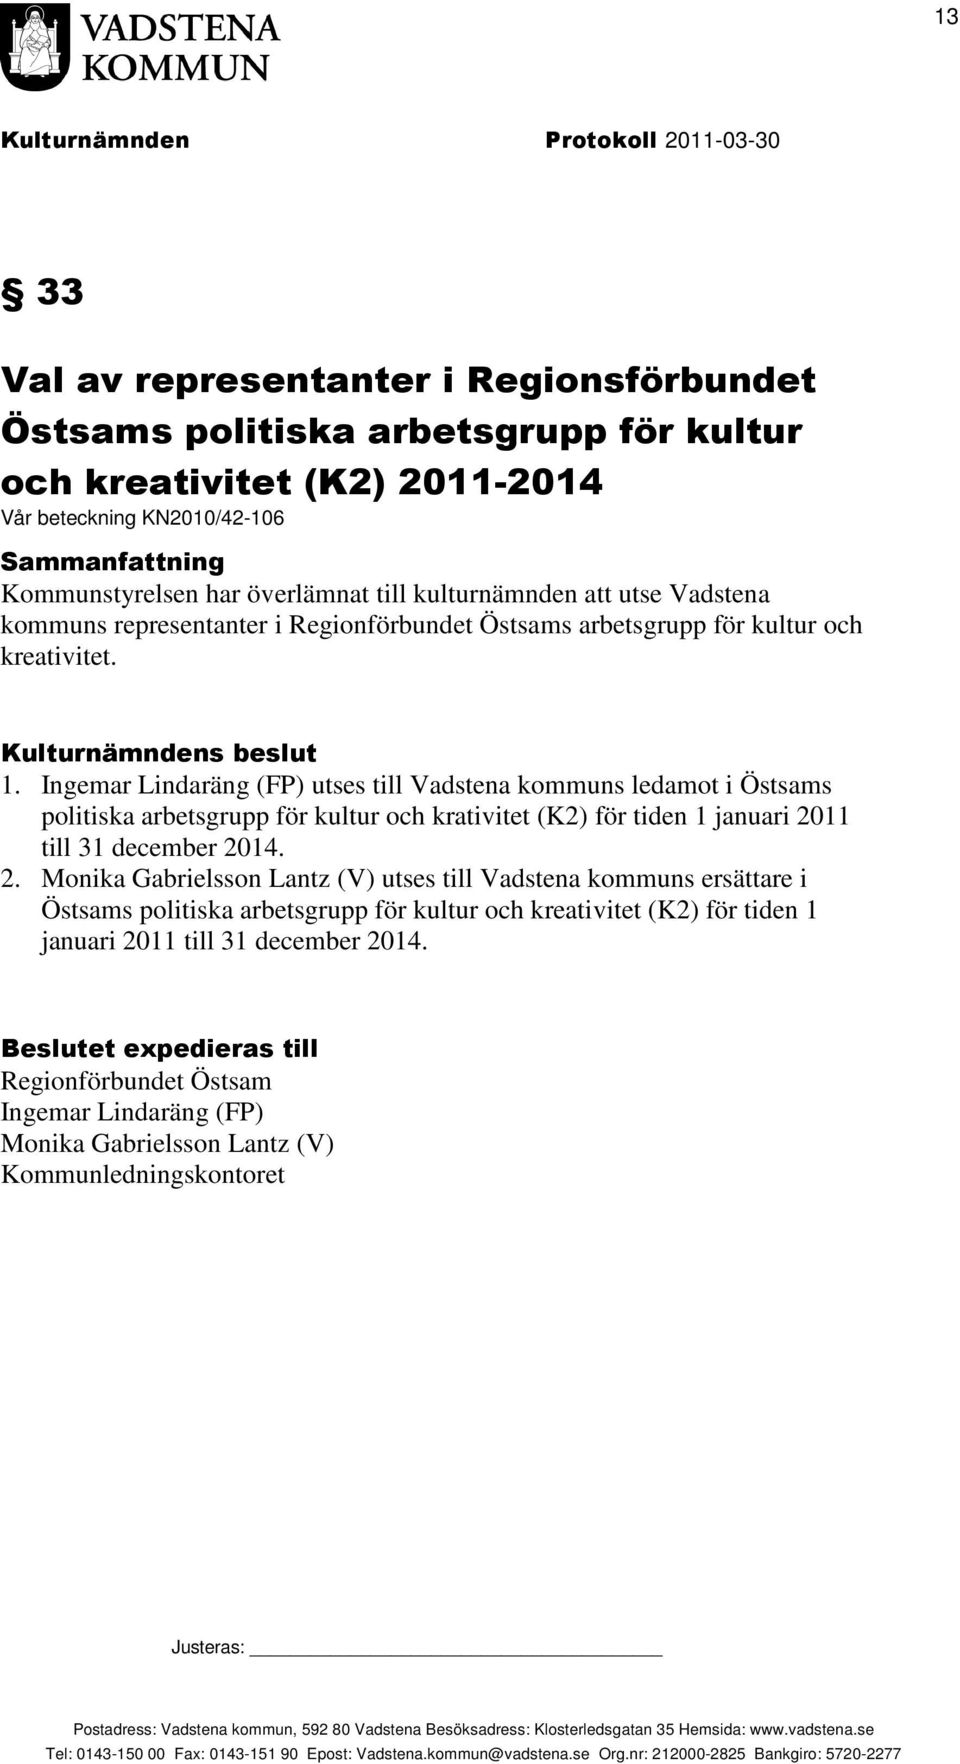 Ingemar Lindaräng (FP) utses till Vadstena kommuns ledamot i Östsams politiska arbetsgrupp för kultur och krativitet (K2) för tiden 1 januari 20